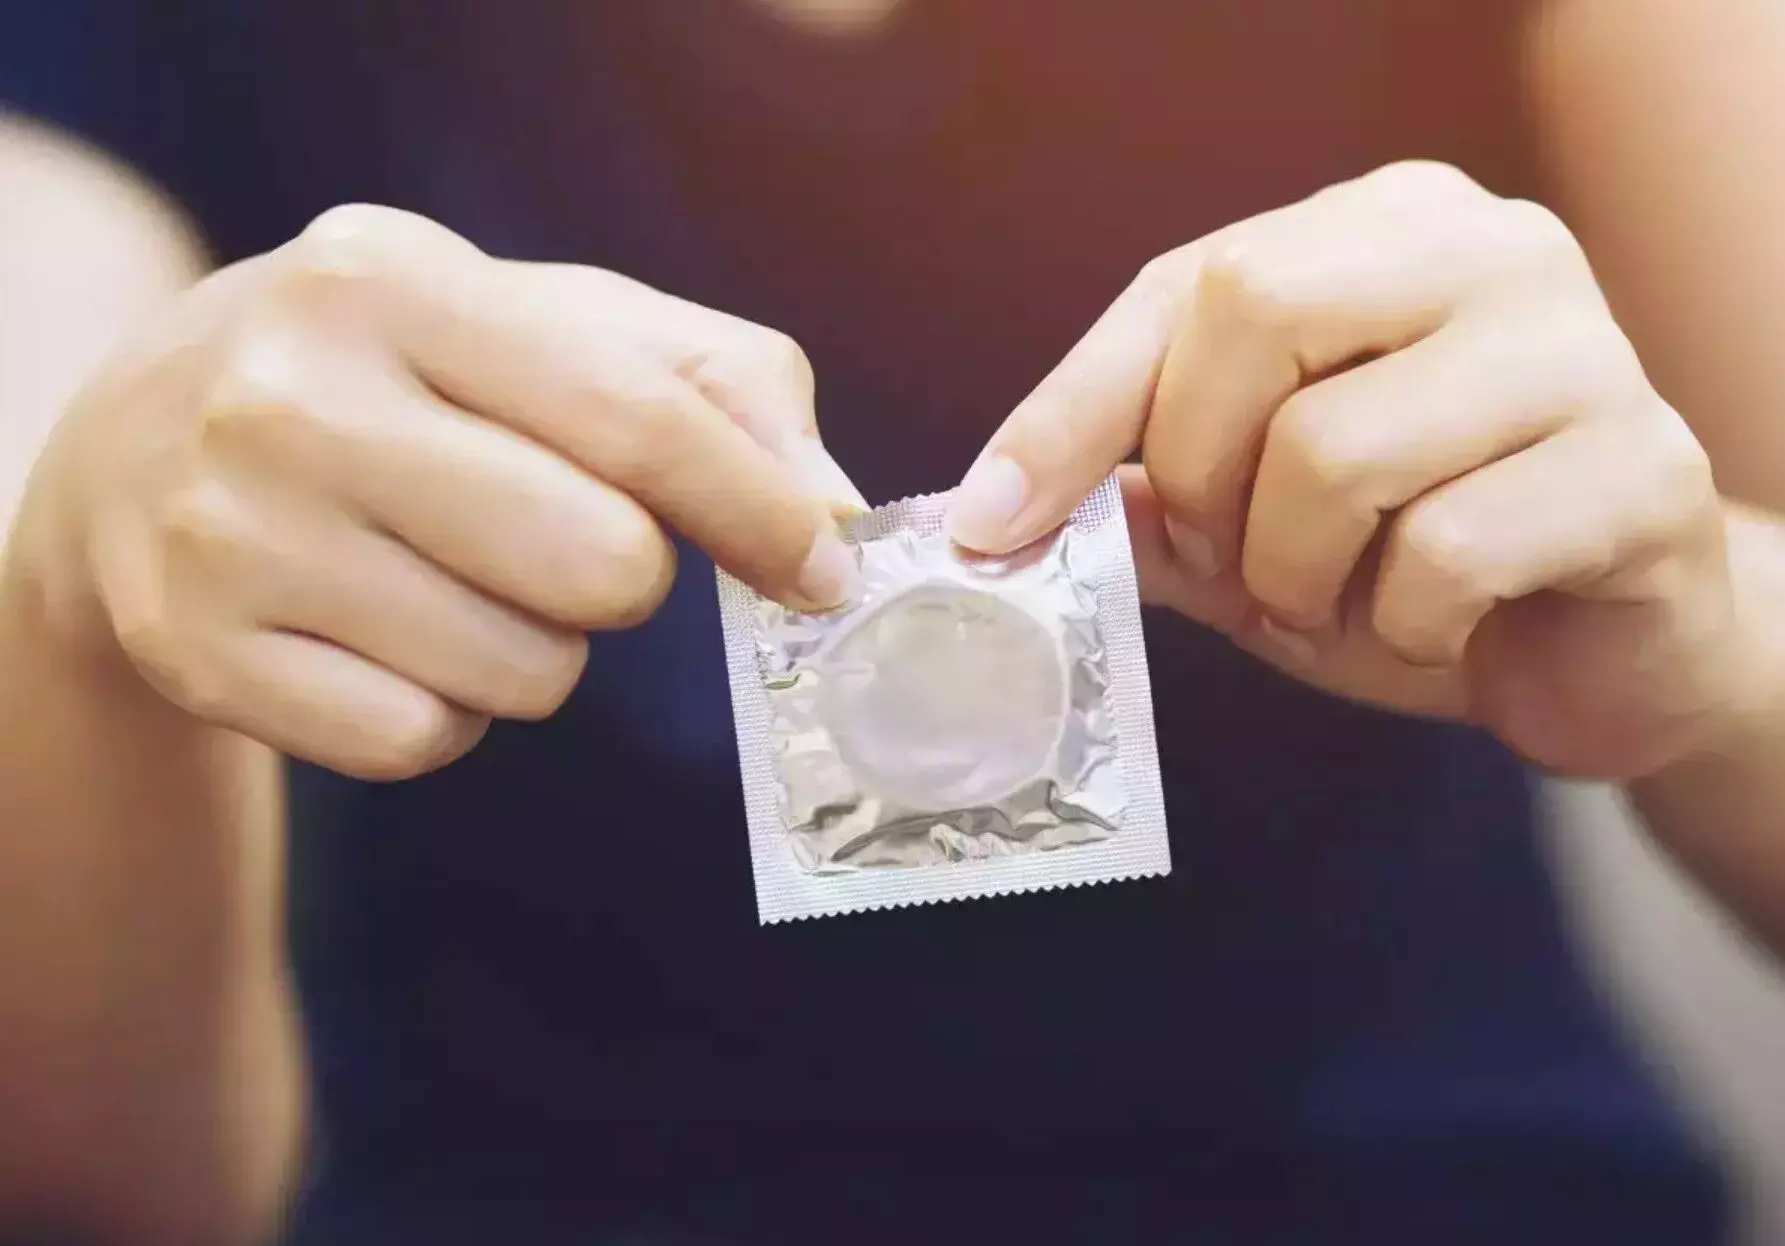 पुरुष कंडोम का उपयोग कैसे करें, लाभ व जानकारी। How to use male condom, benefits and information.